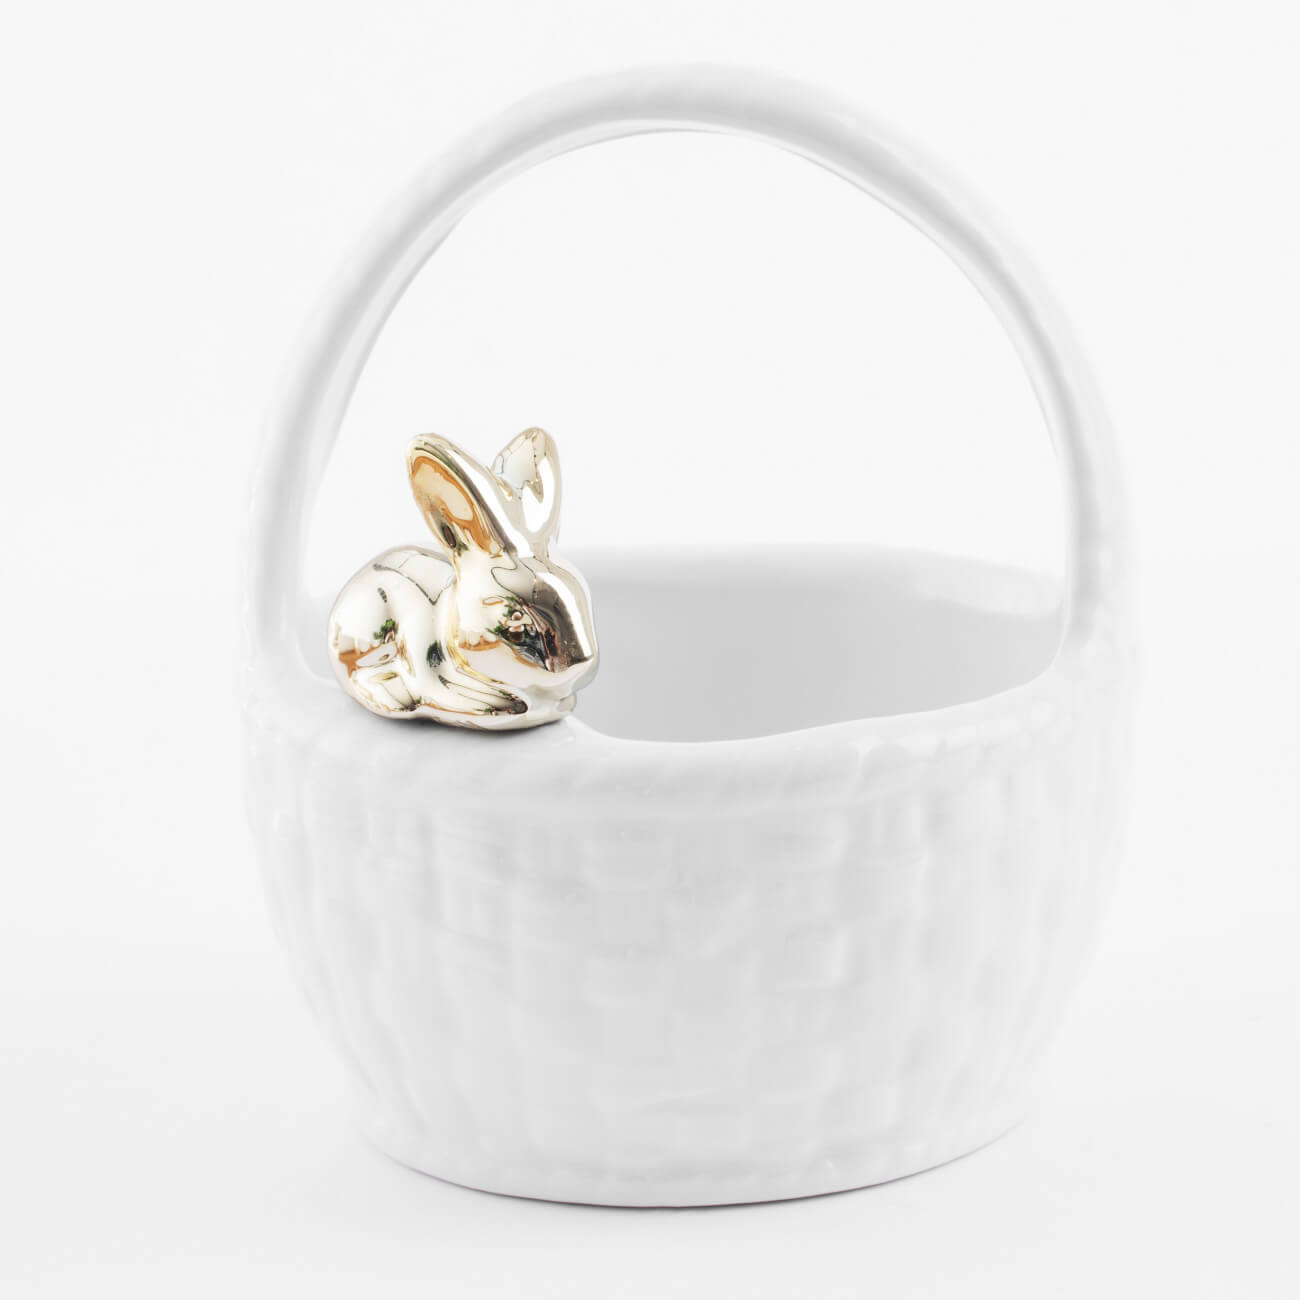 Конфетница, 12х14 см, с ручкой, керамика, белая, Кролик на корзине, Easter gold конфетница сапожок с бомбошками